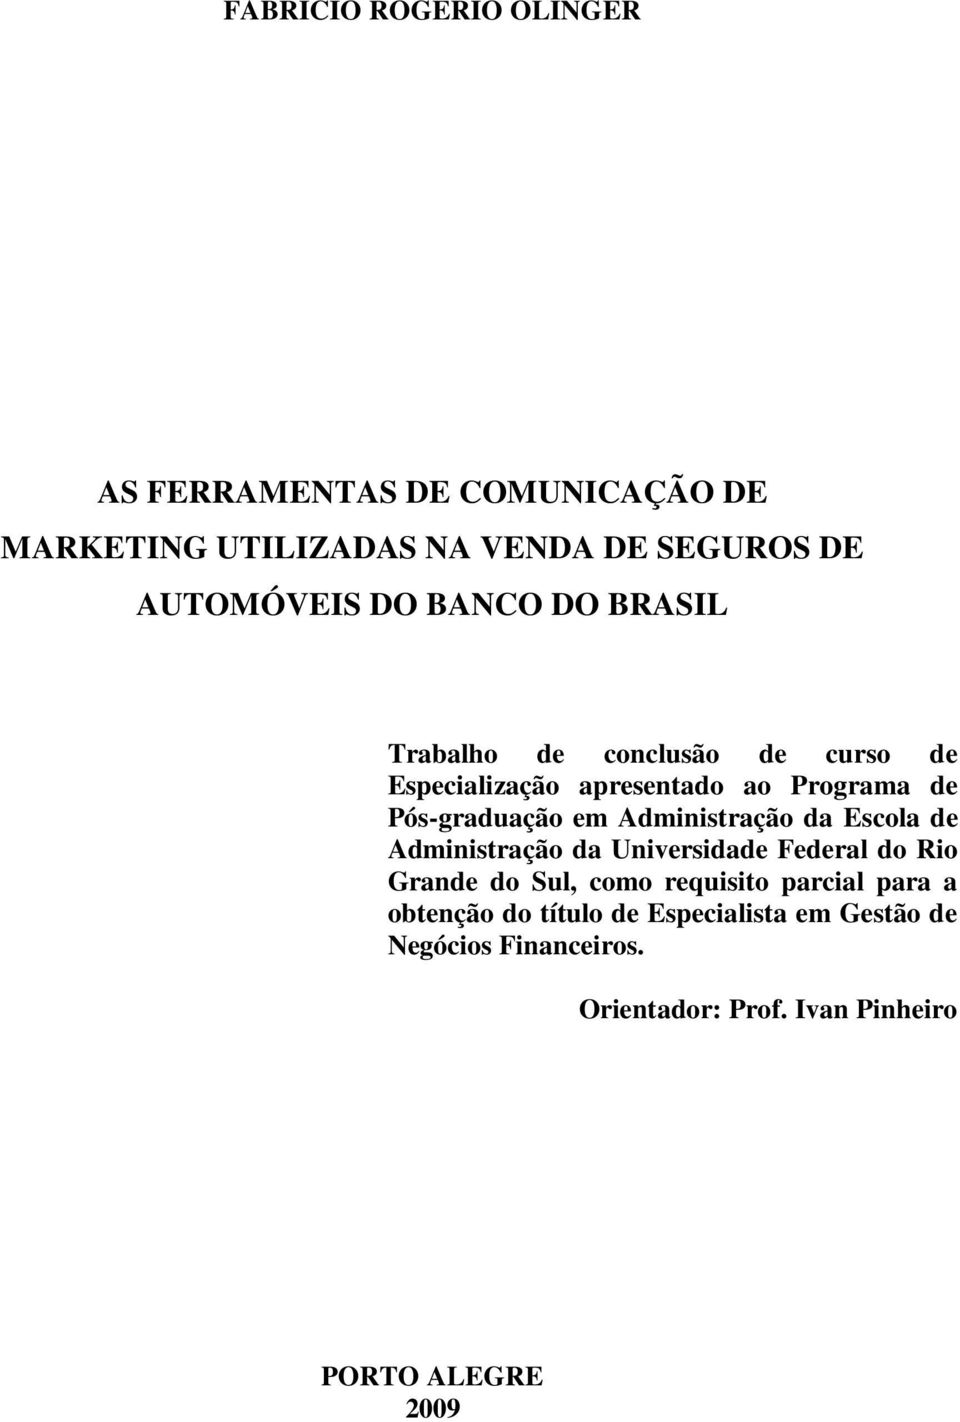 Administração da Escola de Administração da Universidade Federal do Rio Grande do Sul, como requisito parcial para